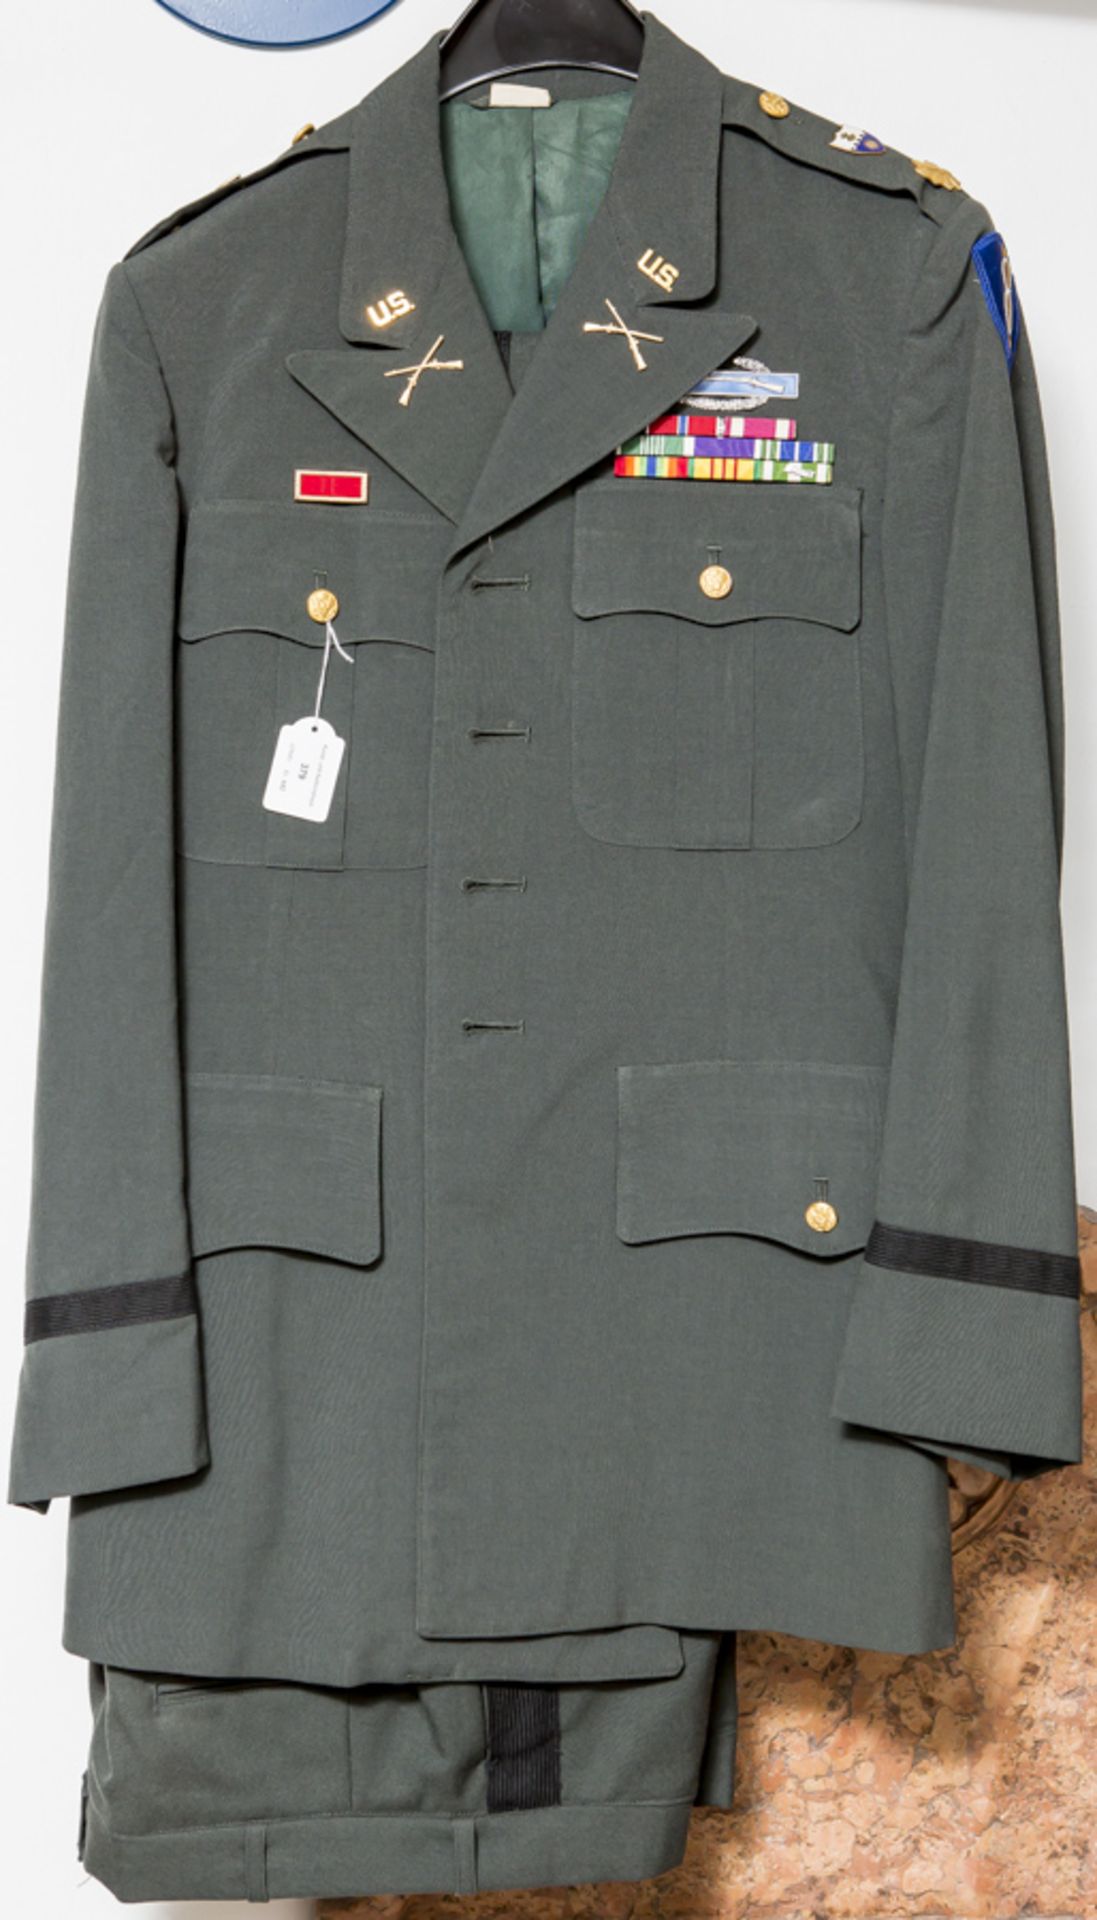 Uniformjacke, USA, Nachkriegszeit, mit div. Auszeichnungen u. Abzeichen, Rang unbekannt.Sehr guter